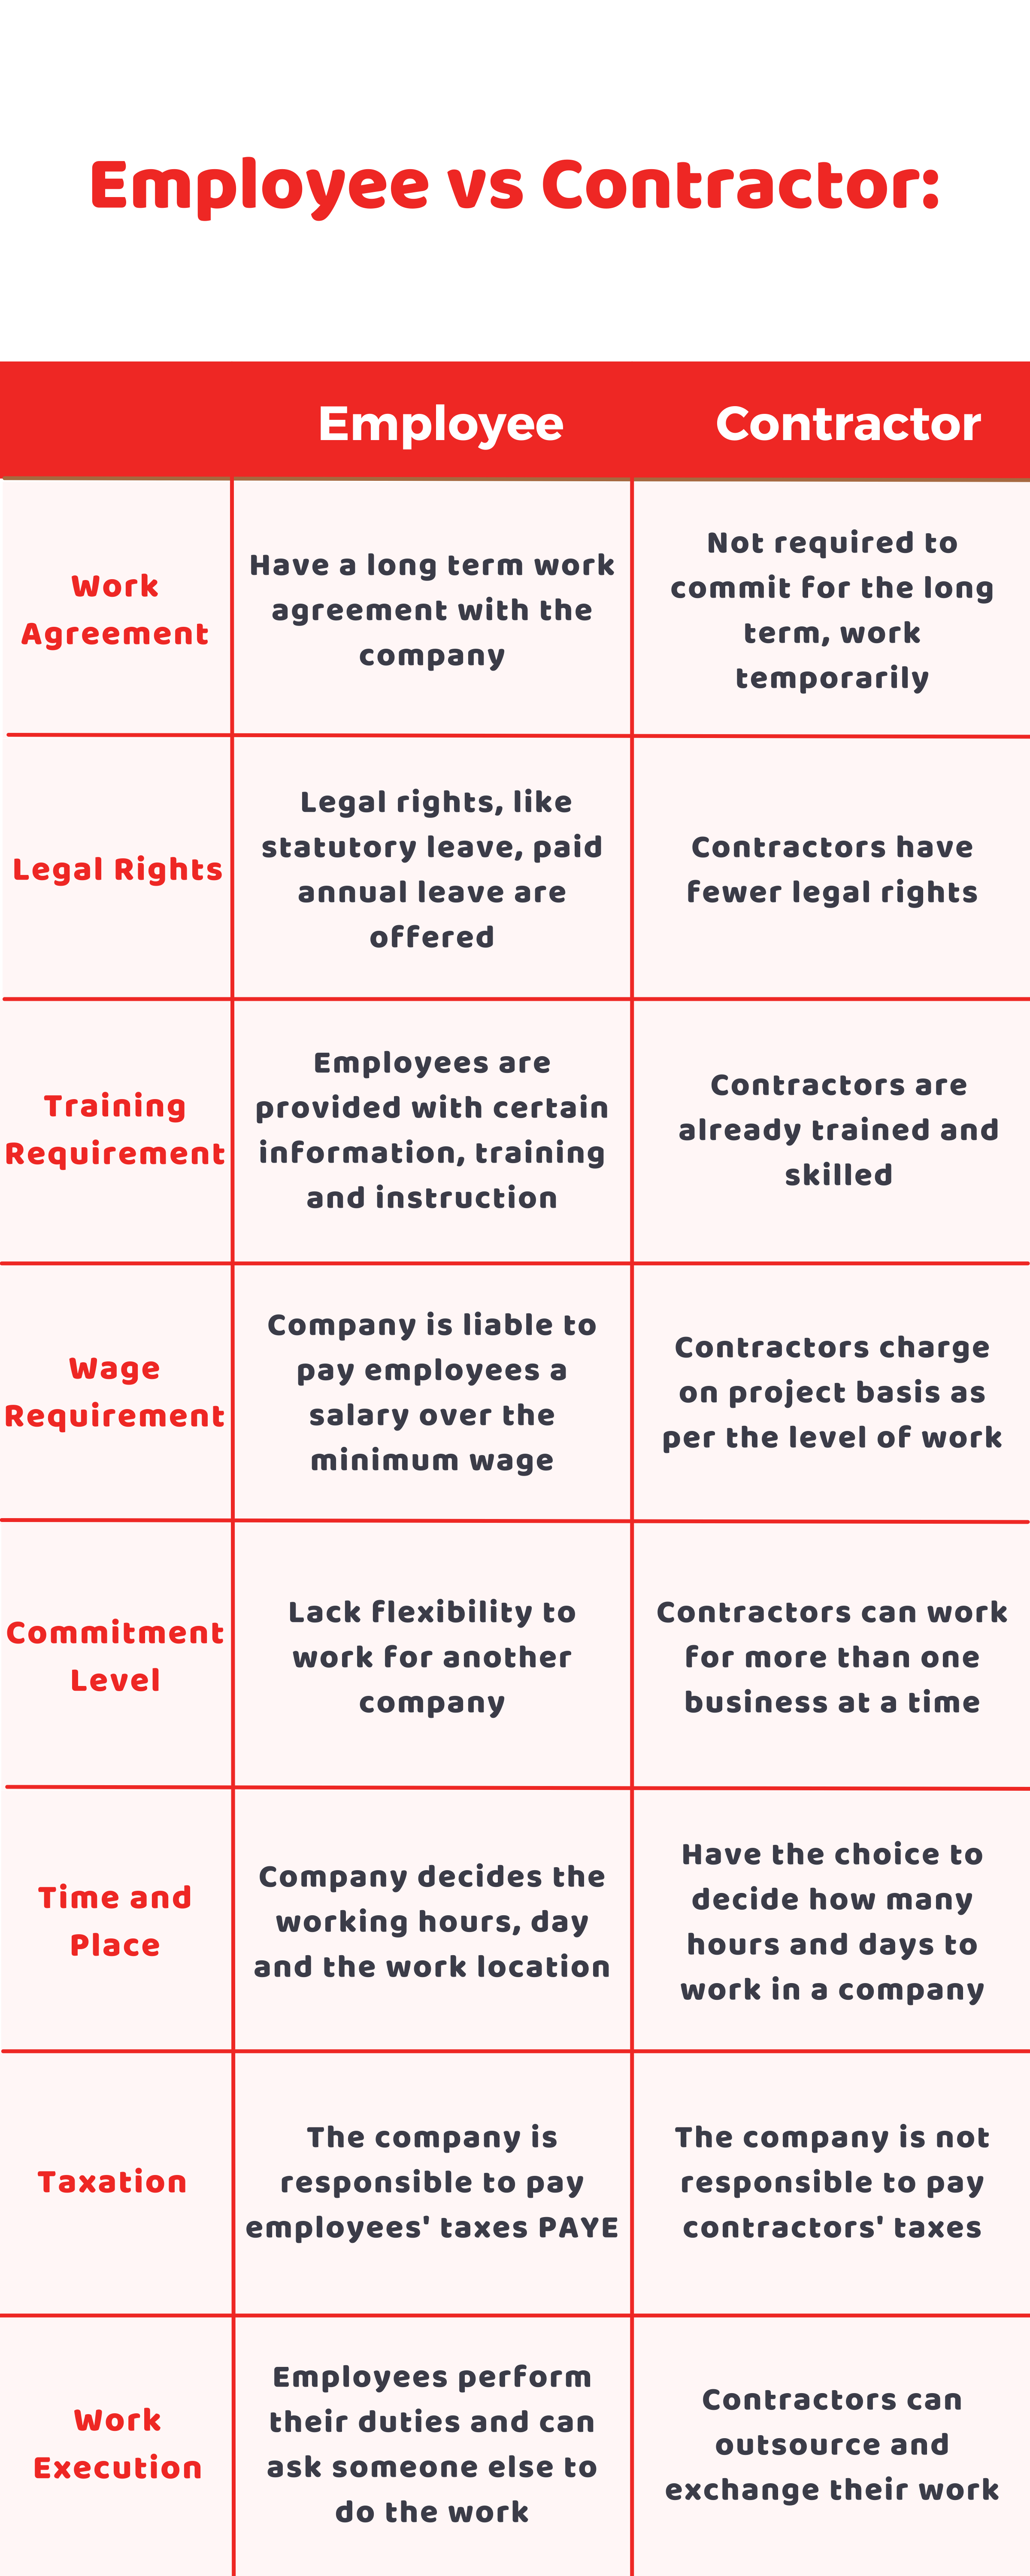 Employee vs Contractor